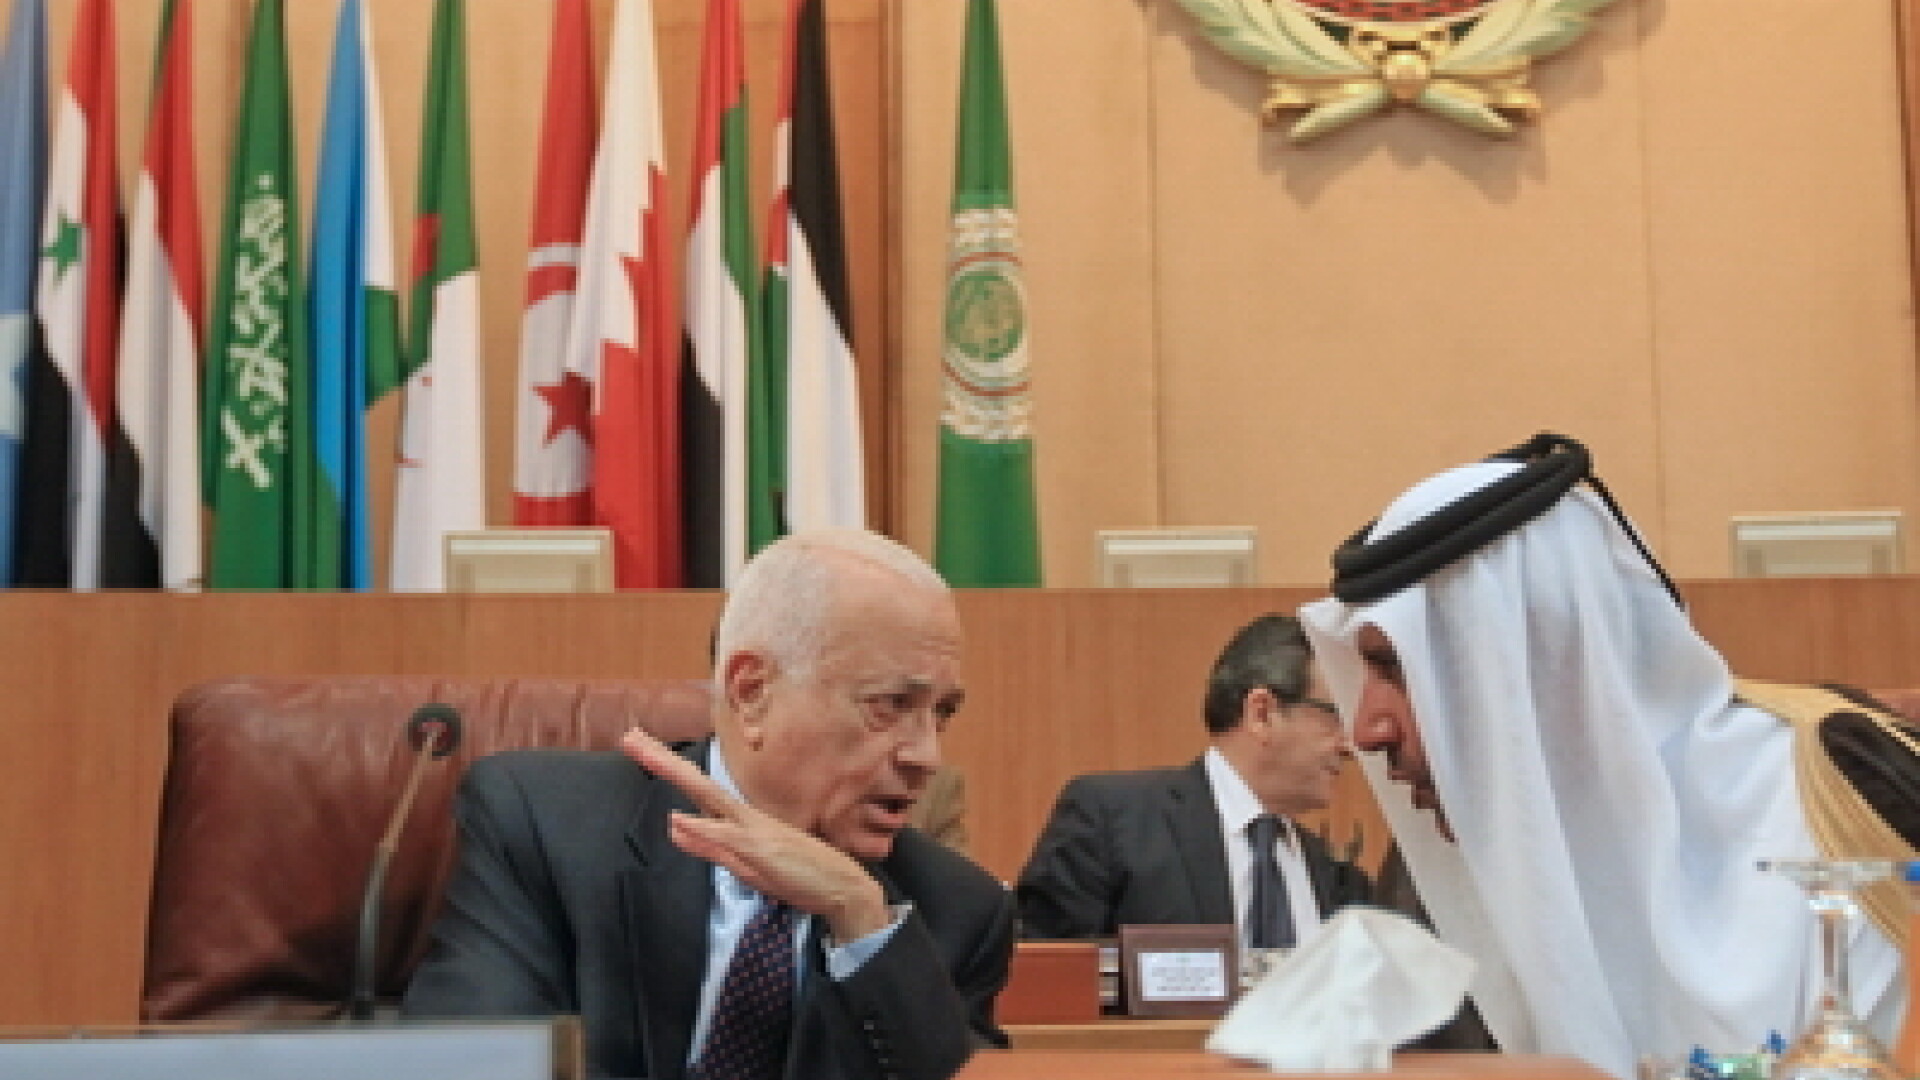 Premierul Qatarului si ministrul de externe Sheikh Hamad bin Jassem bin Jabr al-Thani (D)